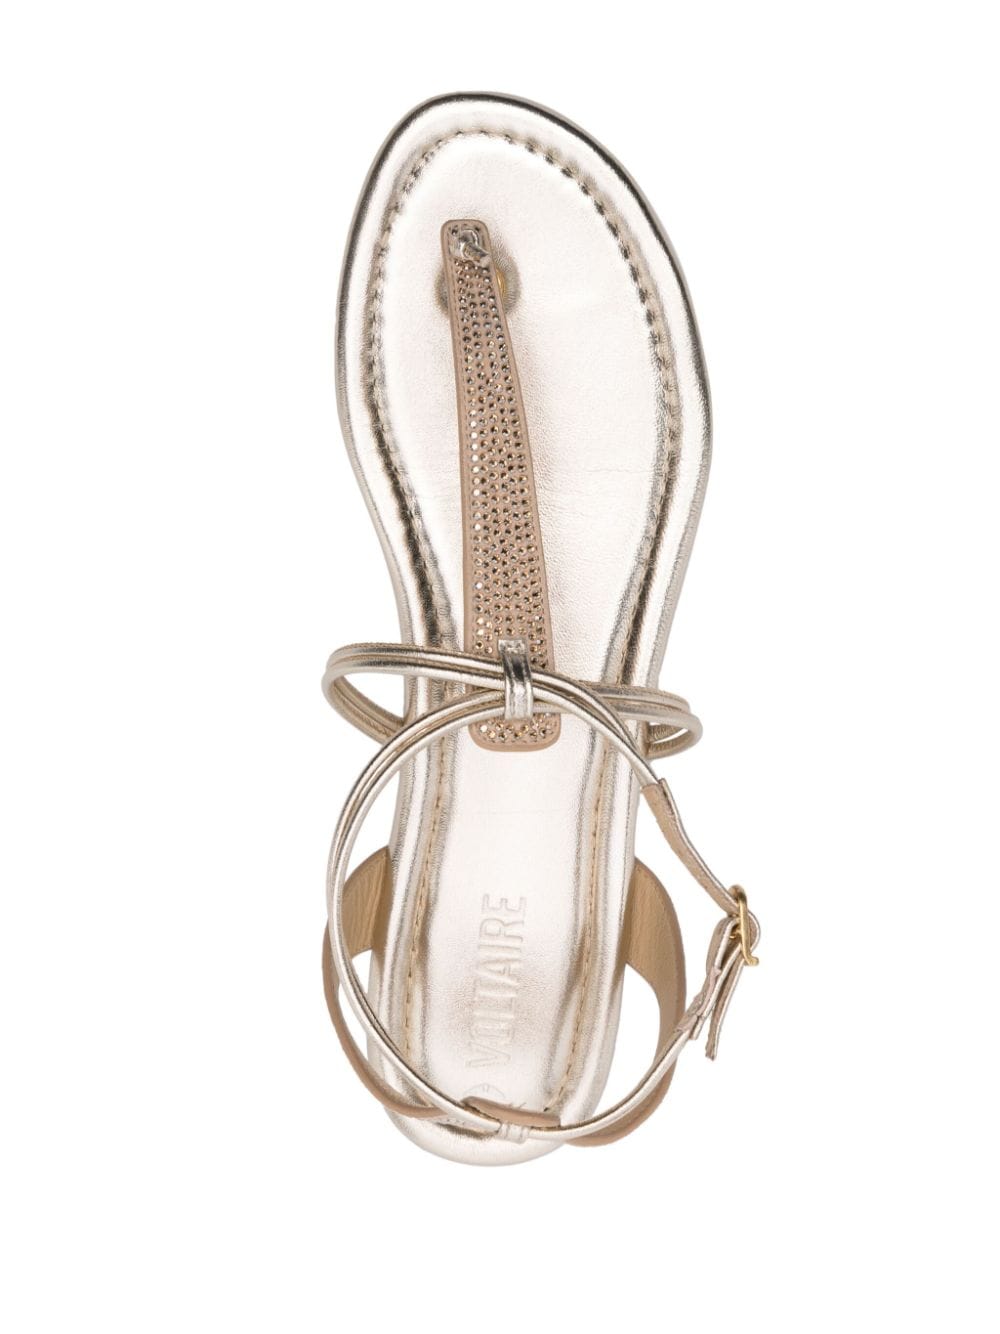 Shop Zadig & Voltaire Moonstar Crystal-embellished Sandals In Gold